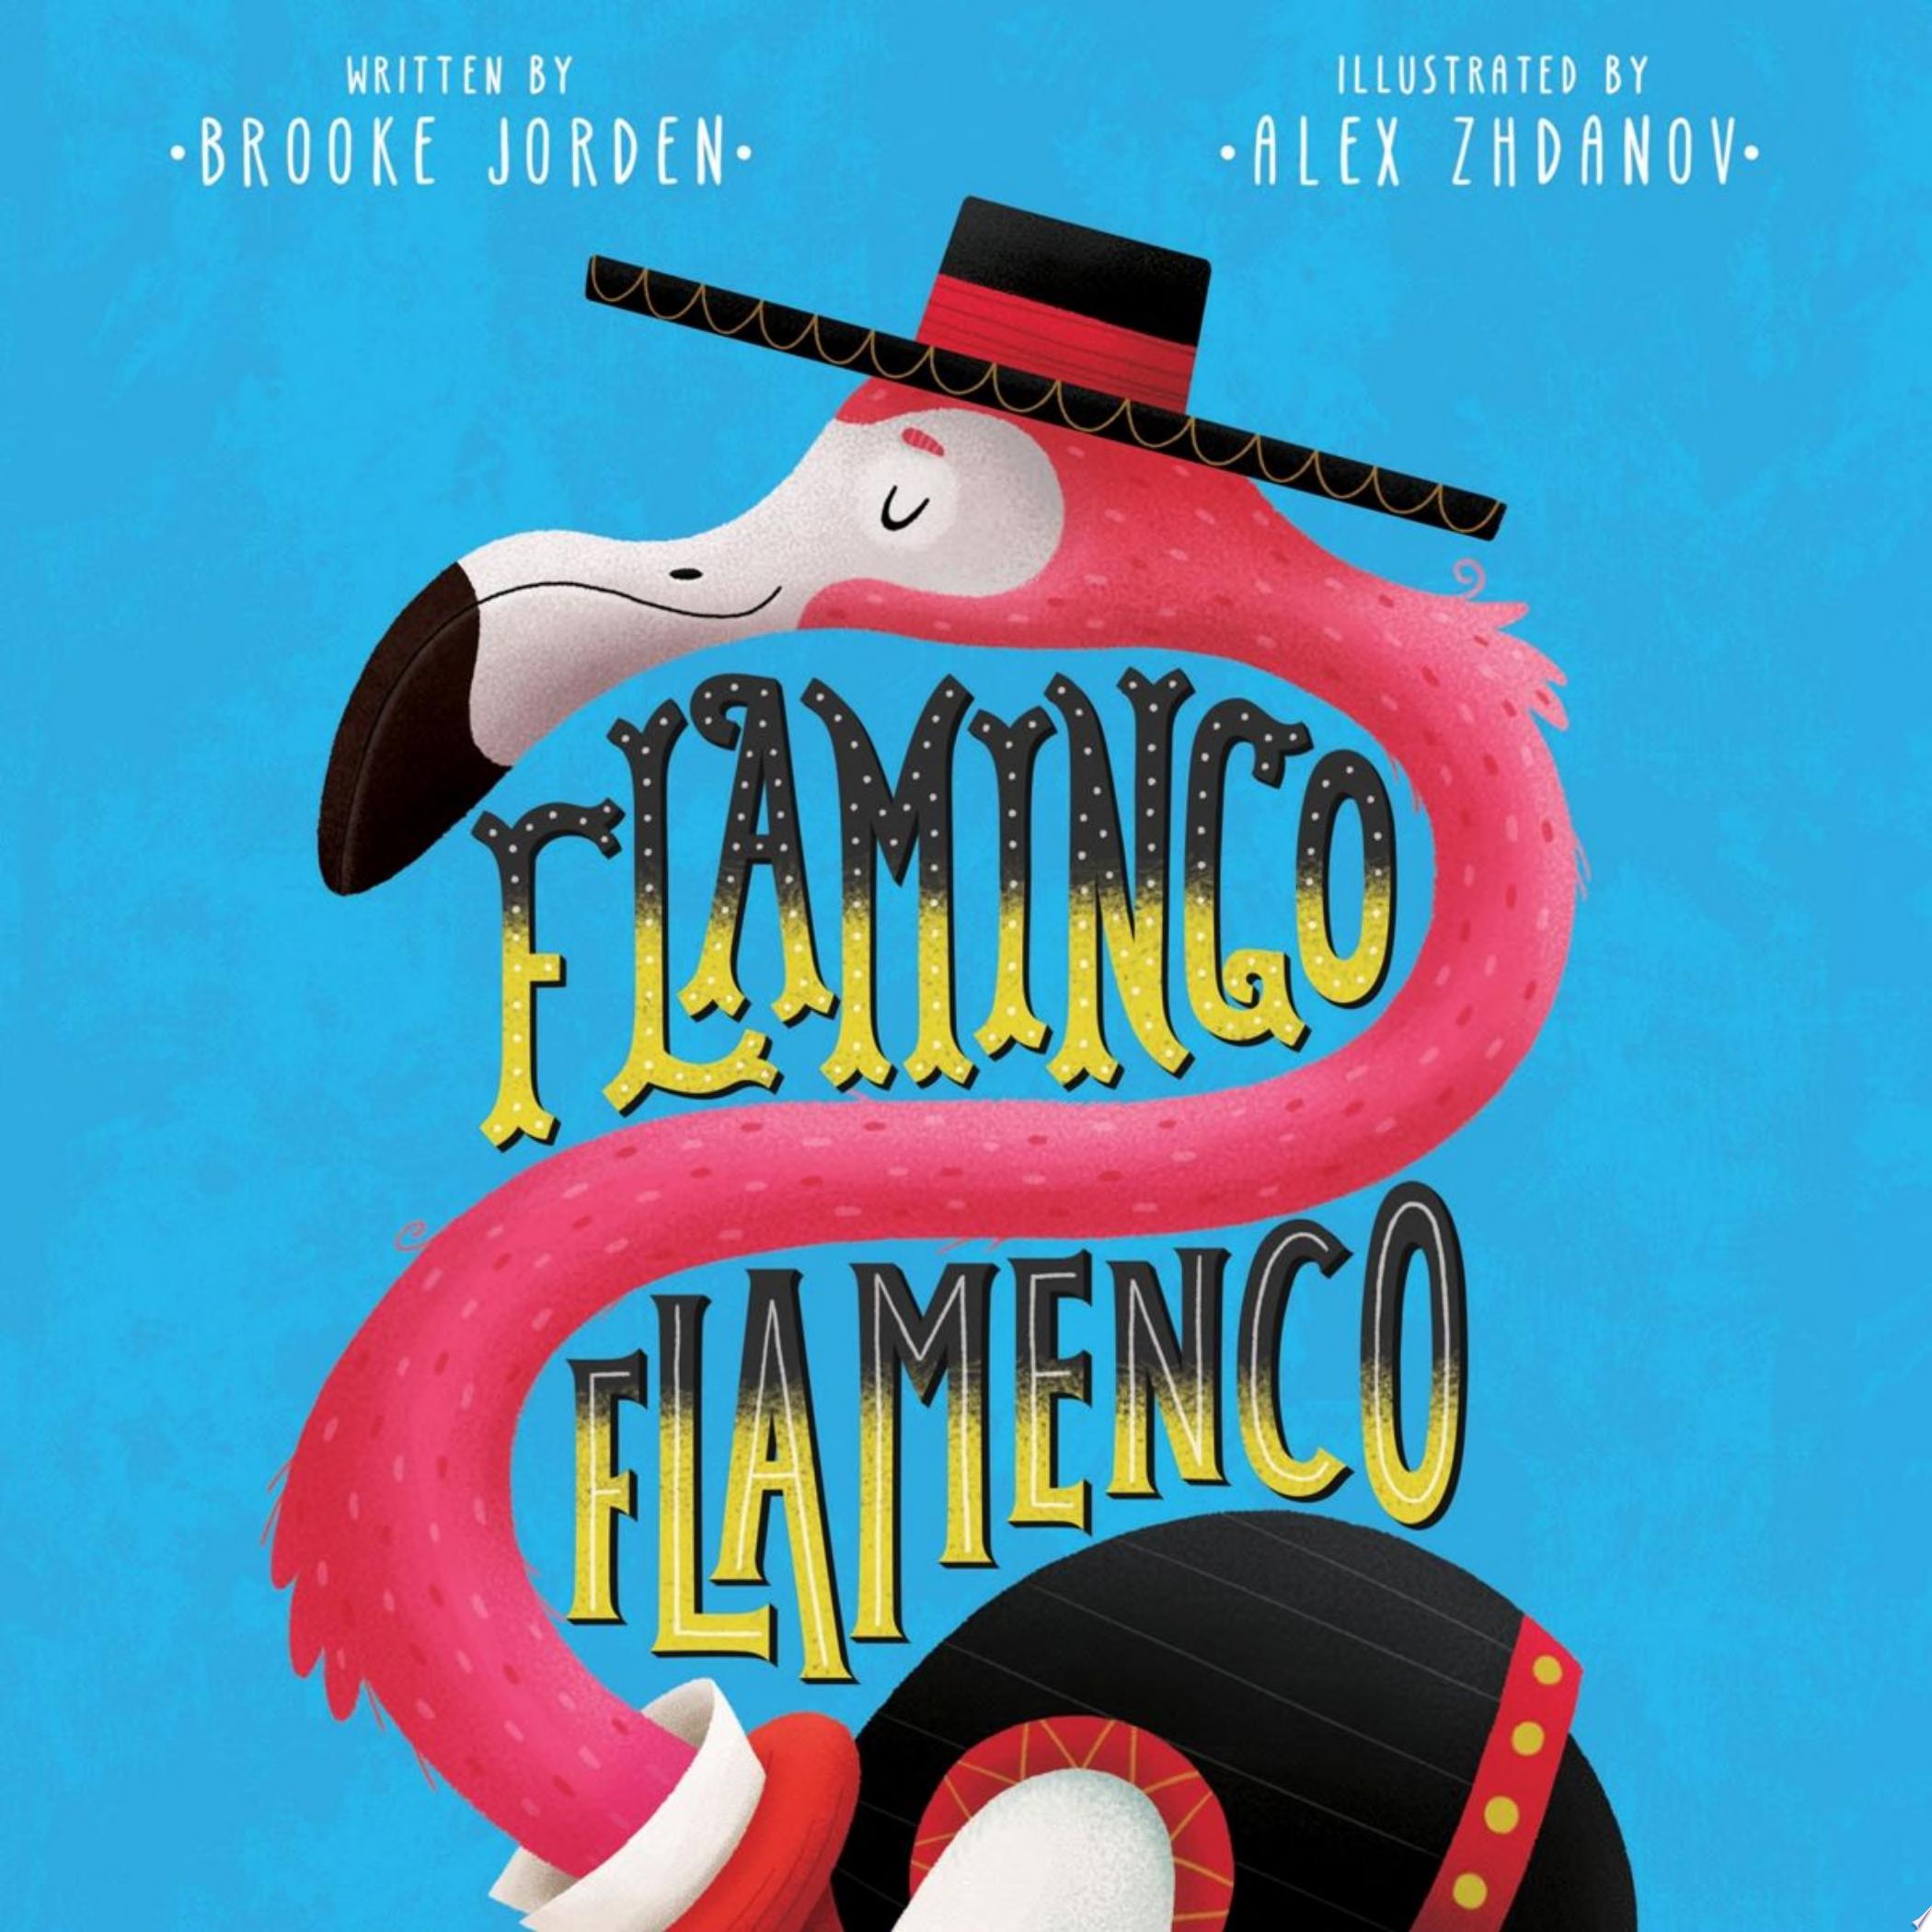 Image for "Flamingo Flamenco"